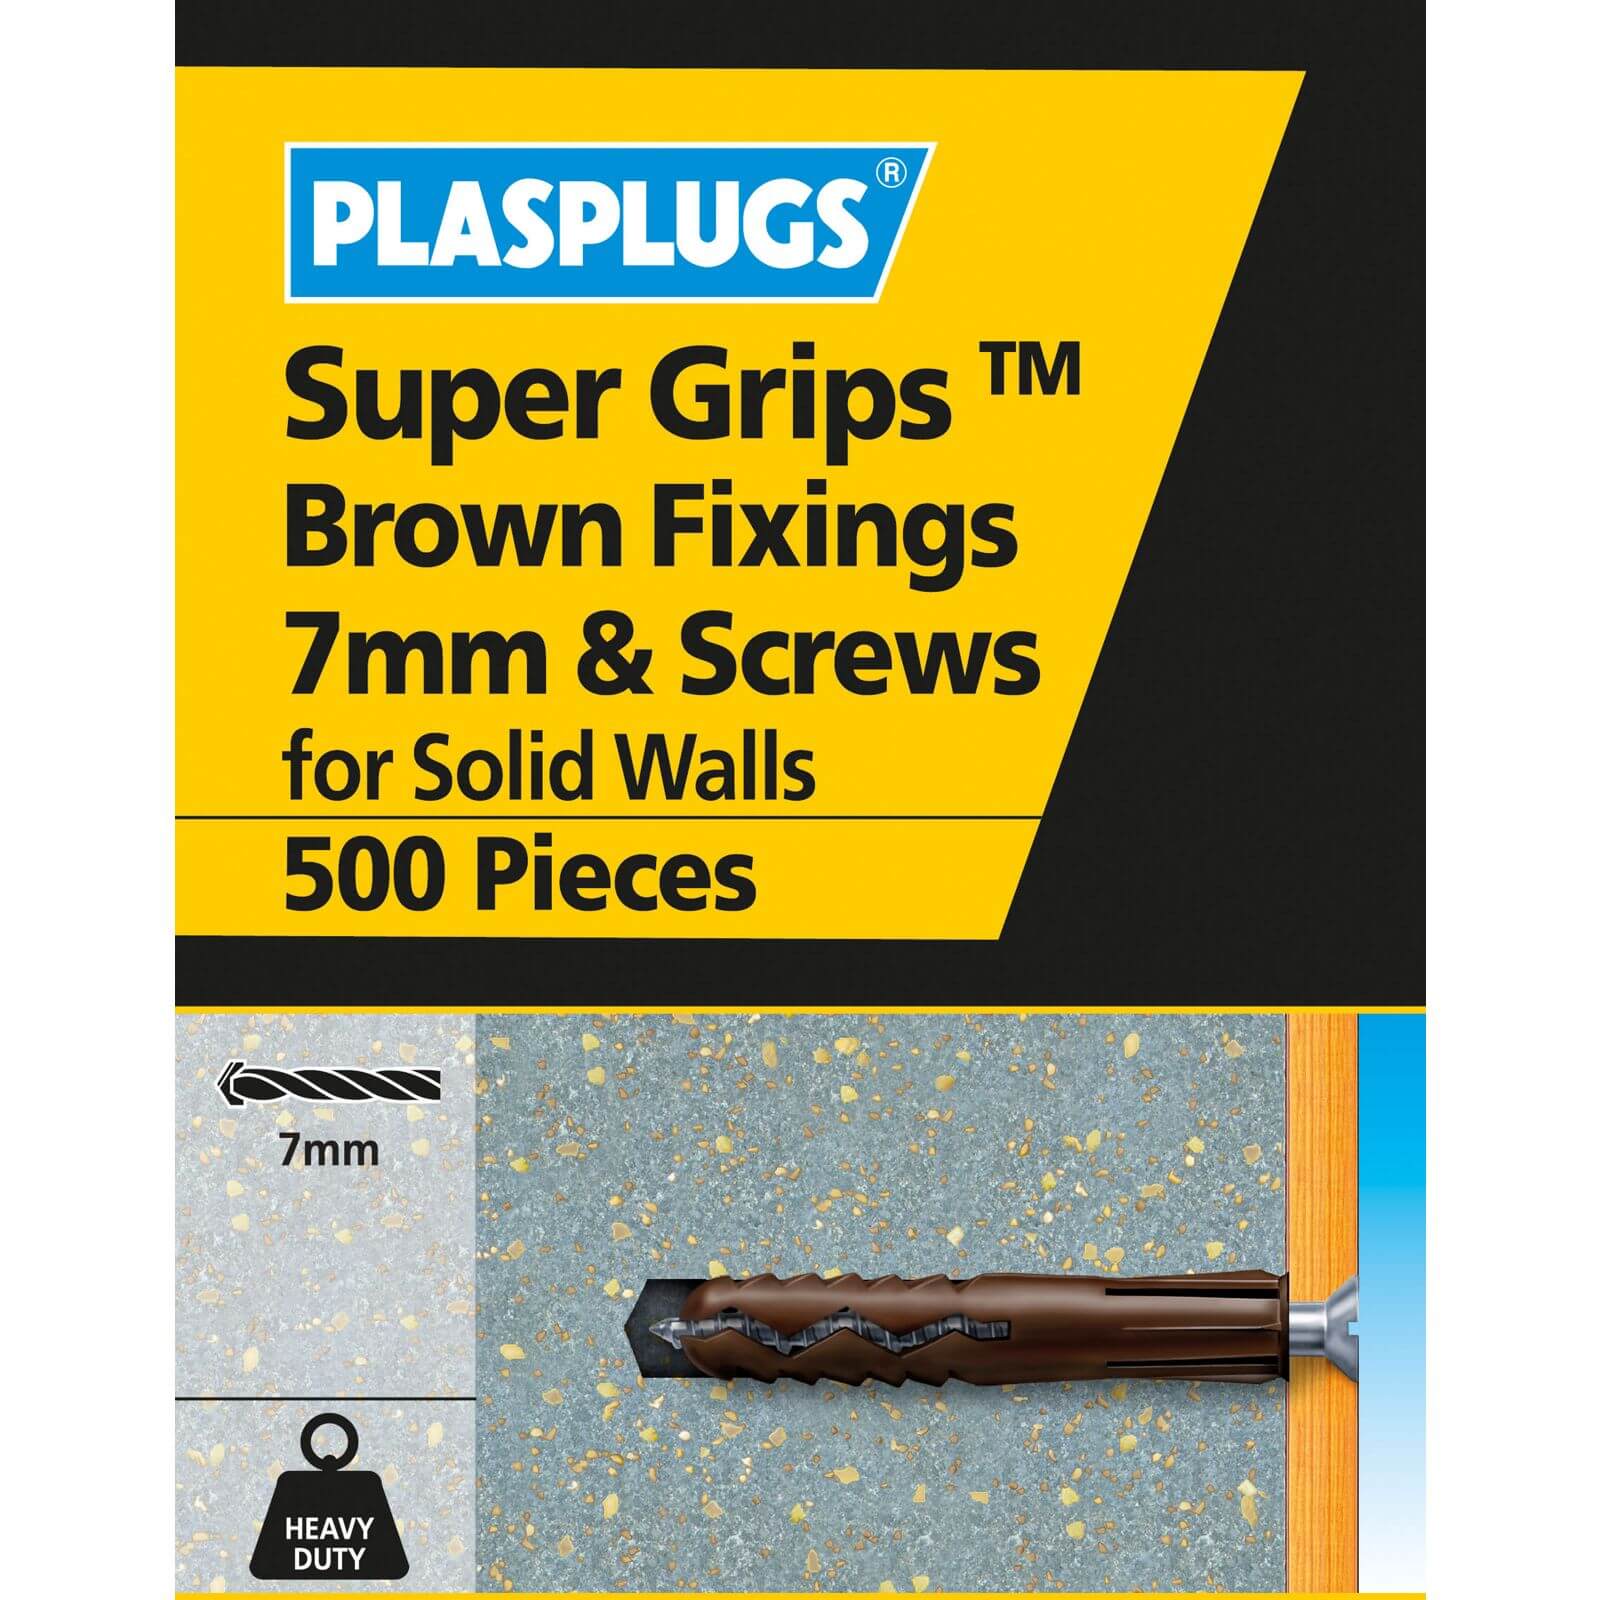 7mm Sgrips Brown Fixings & Screws 500 Pk